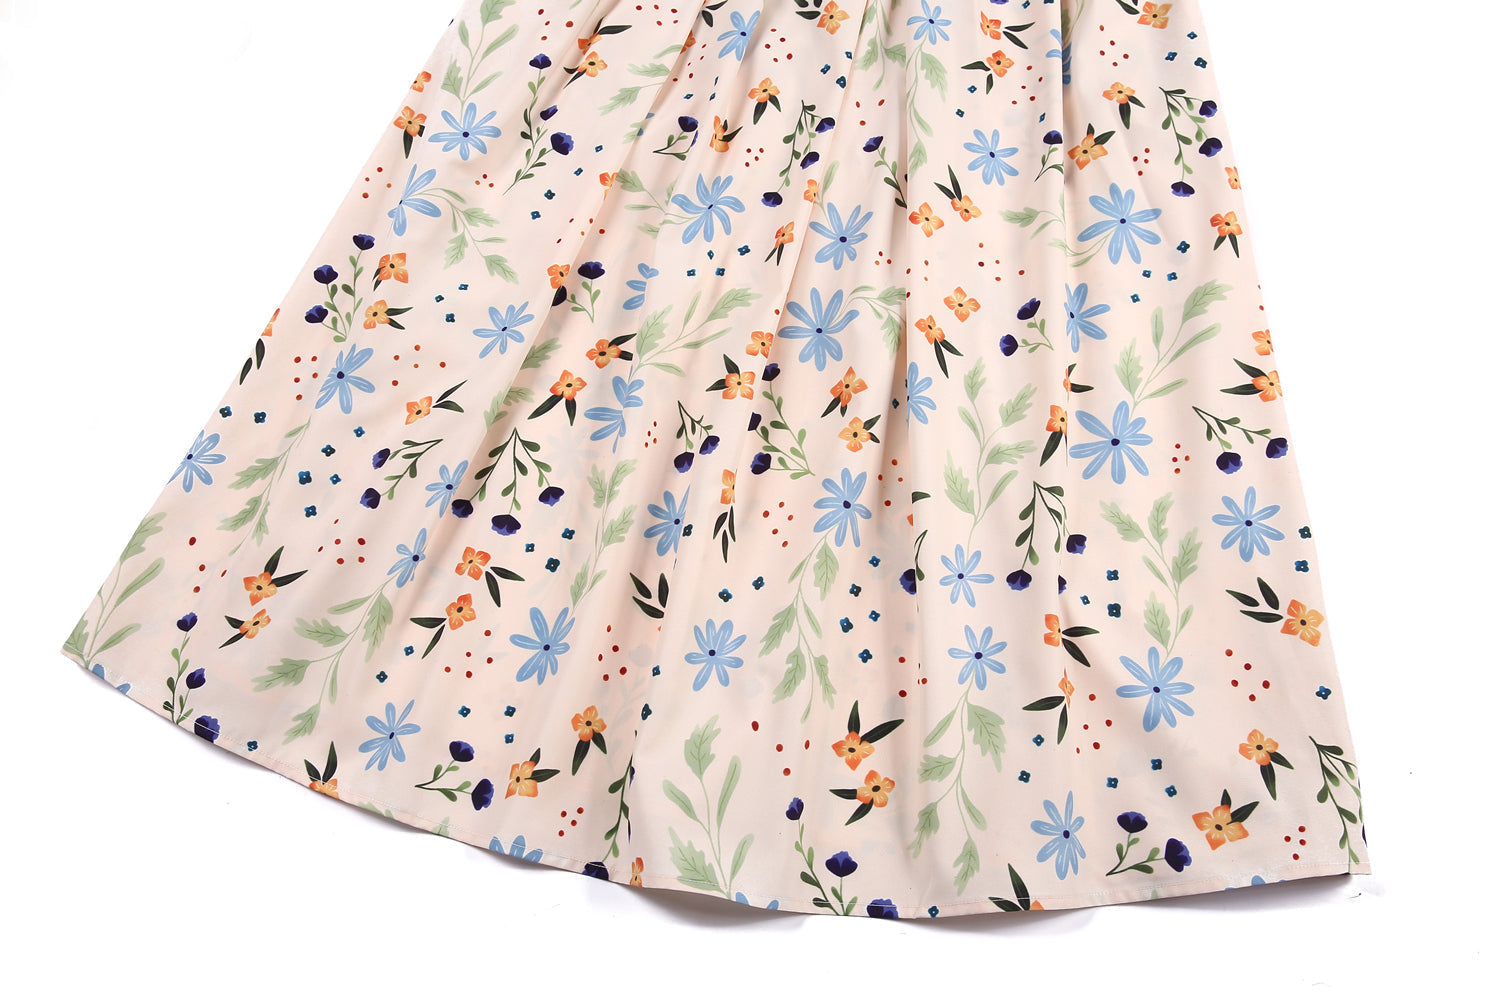 Denim Stitching Floral Print Maxi Dresses